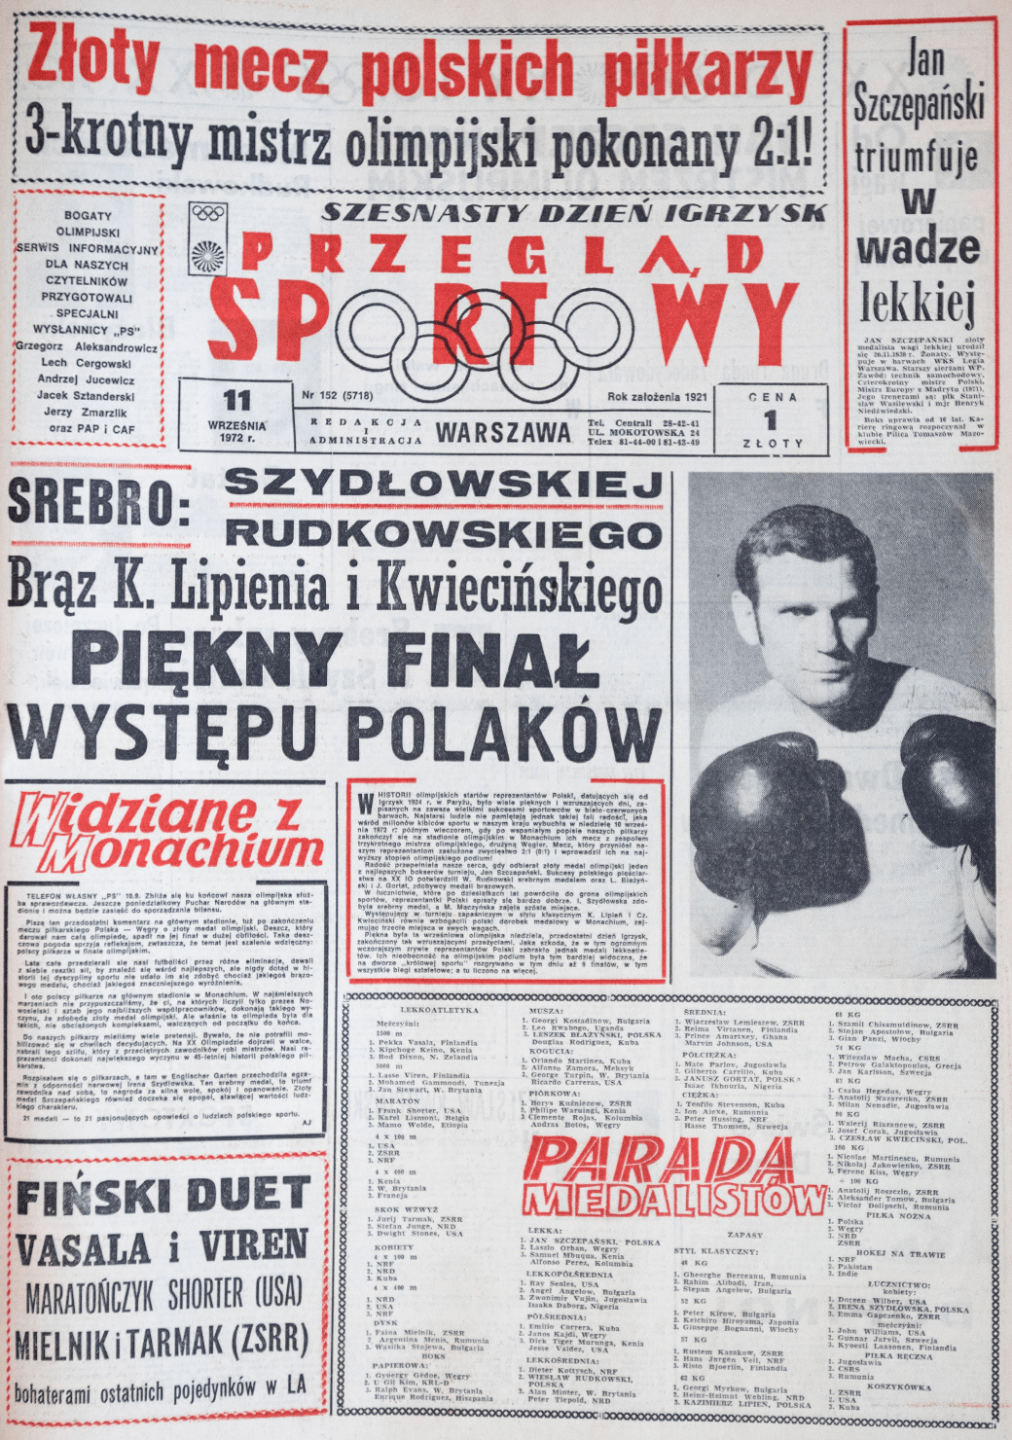 Przegląd Sportowy po meczu Polska -Węgry (10.09.1972)